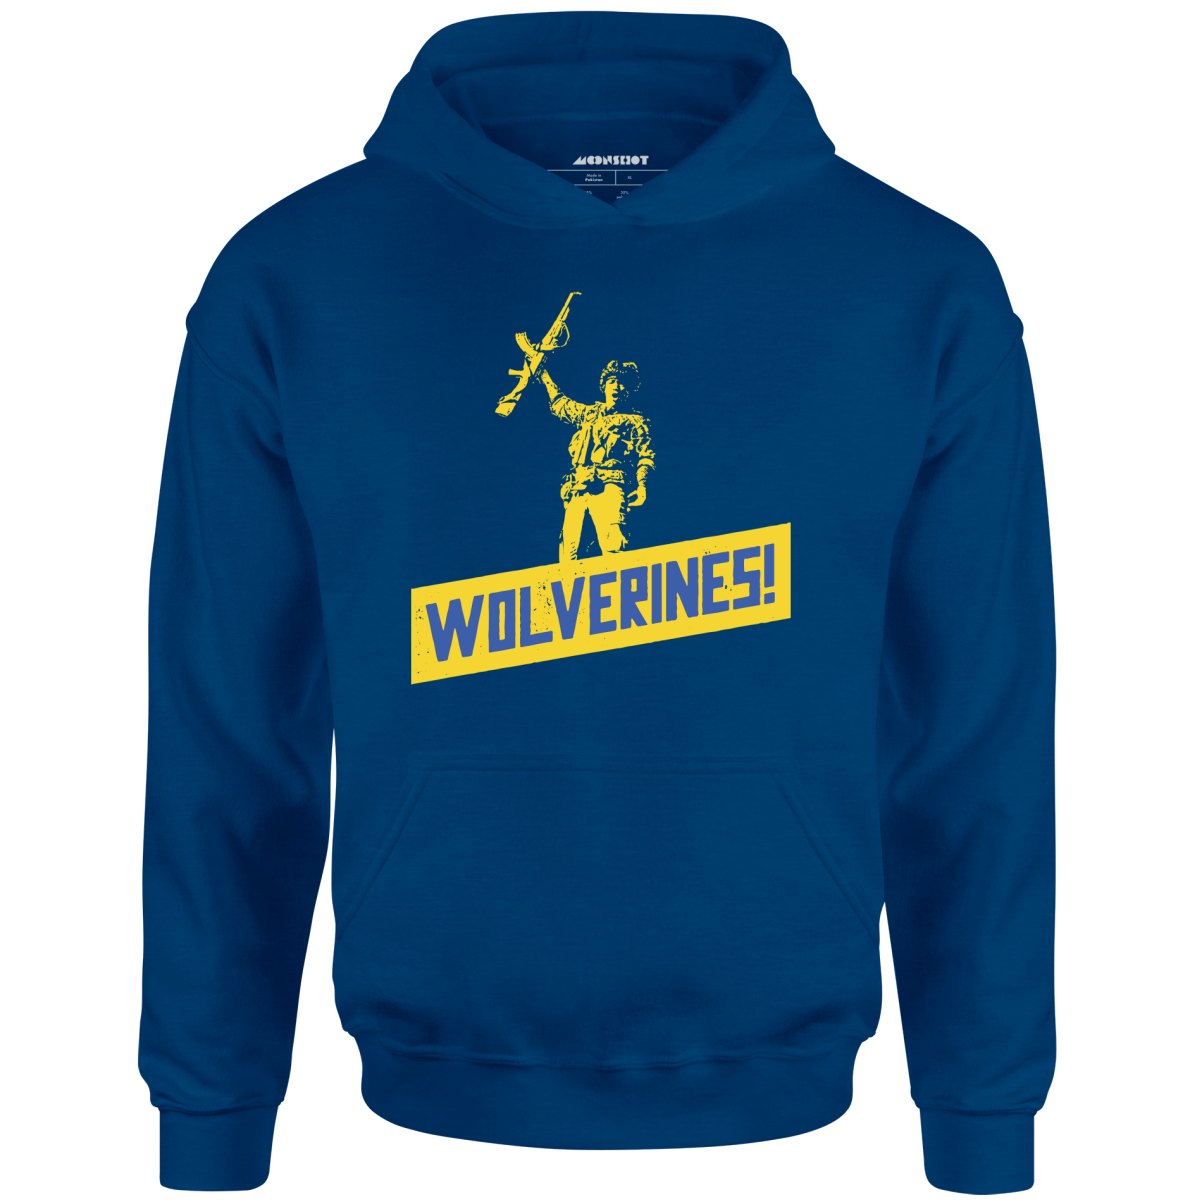 Wolverines Support Ukraine - Unisex Hoodie